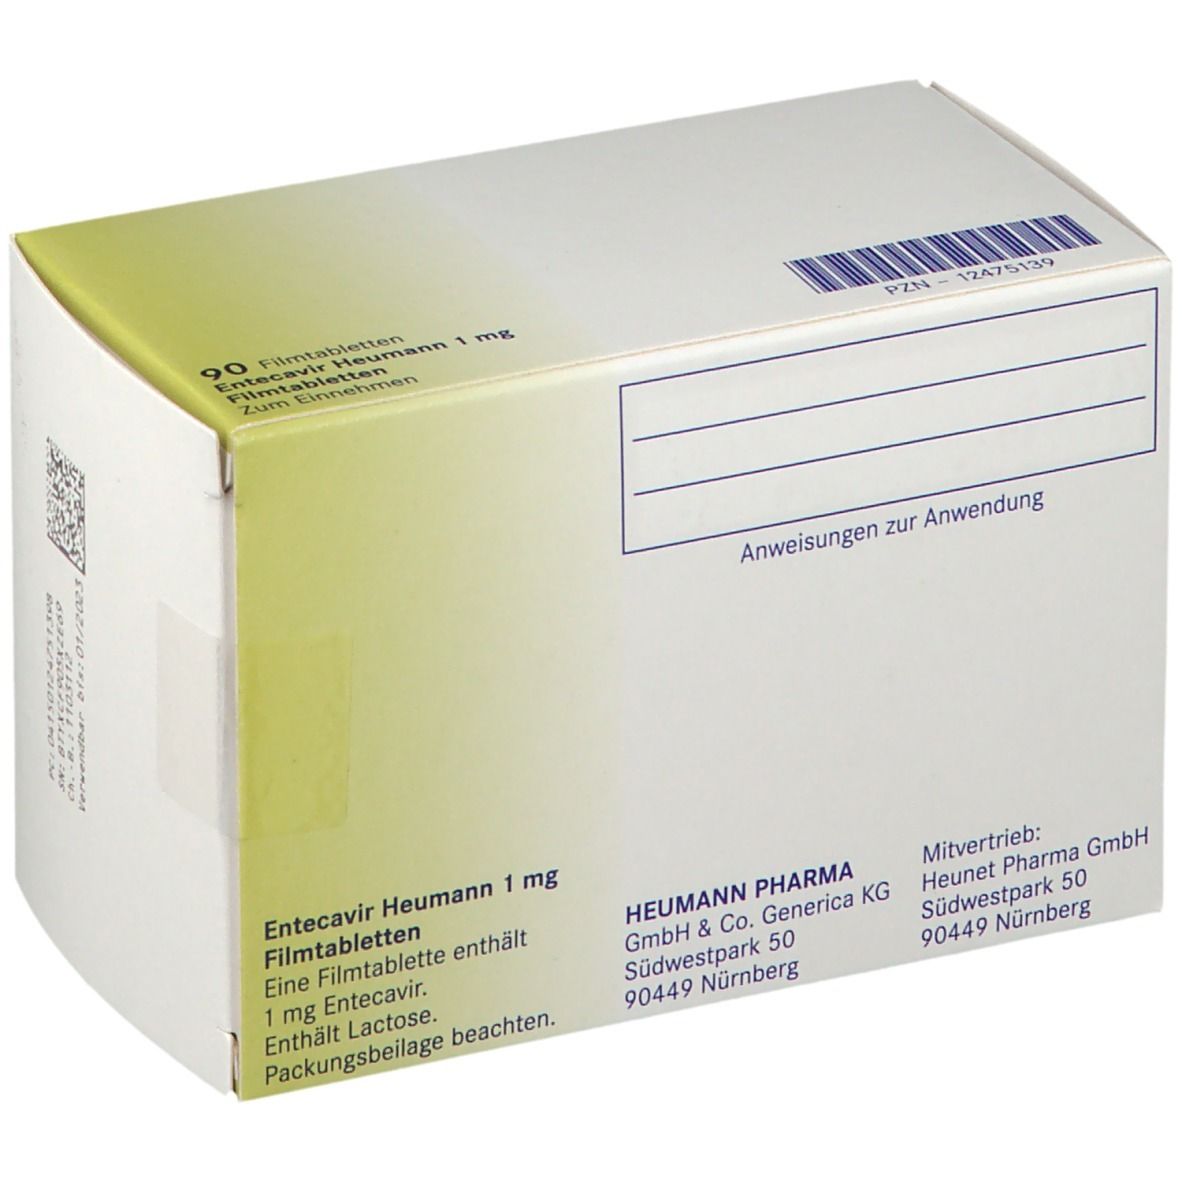 Entecavcir Heumann 1 mg